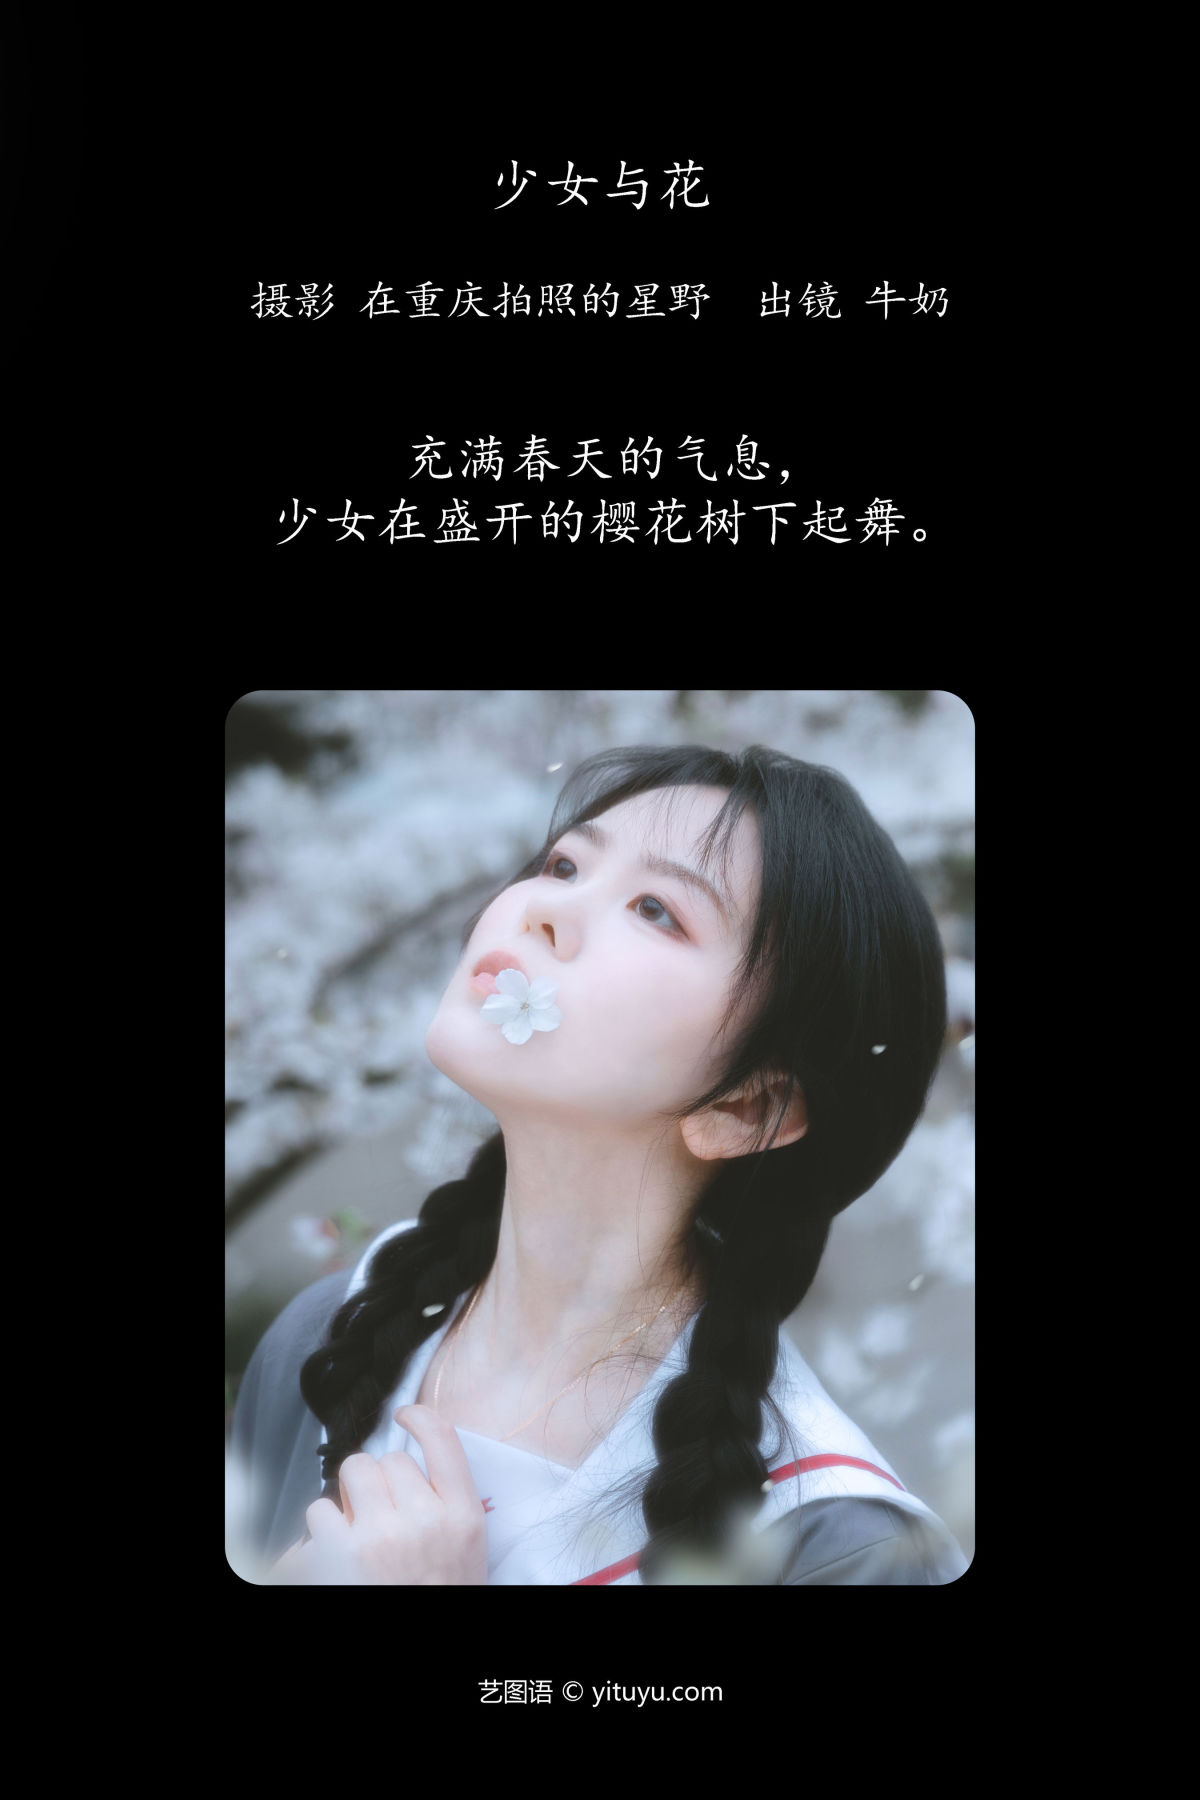 在重庆拍照的星野_牛奶《少女与花》美图作品图片2